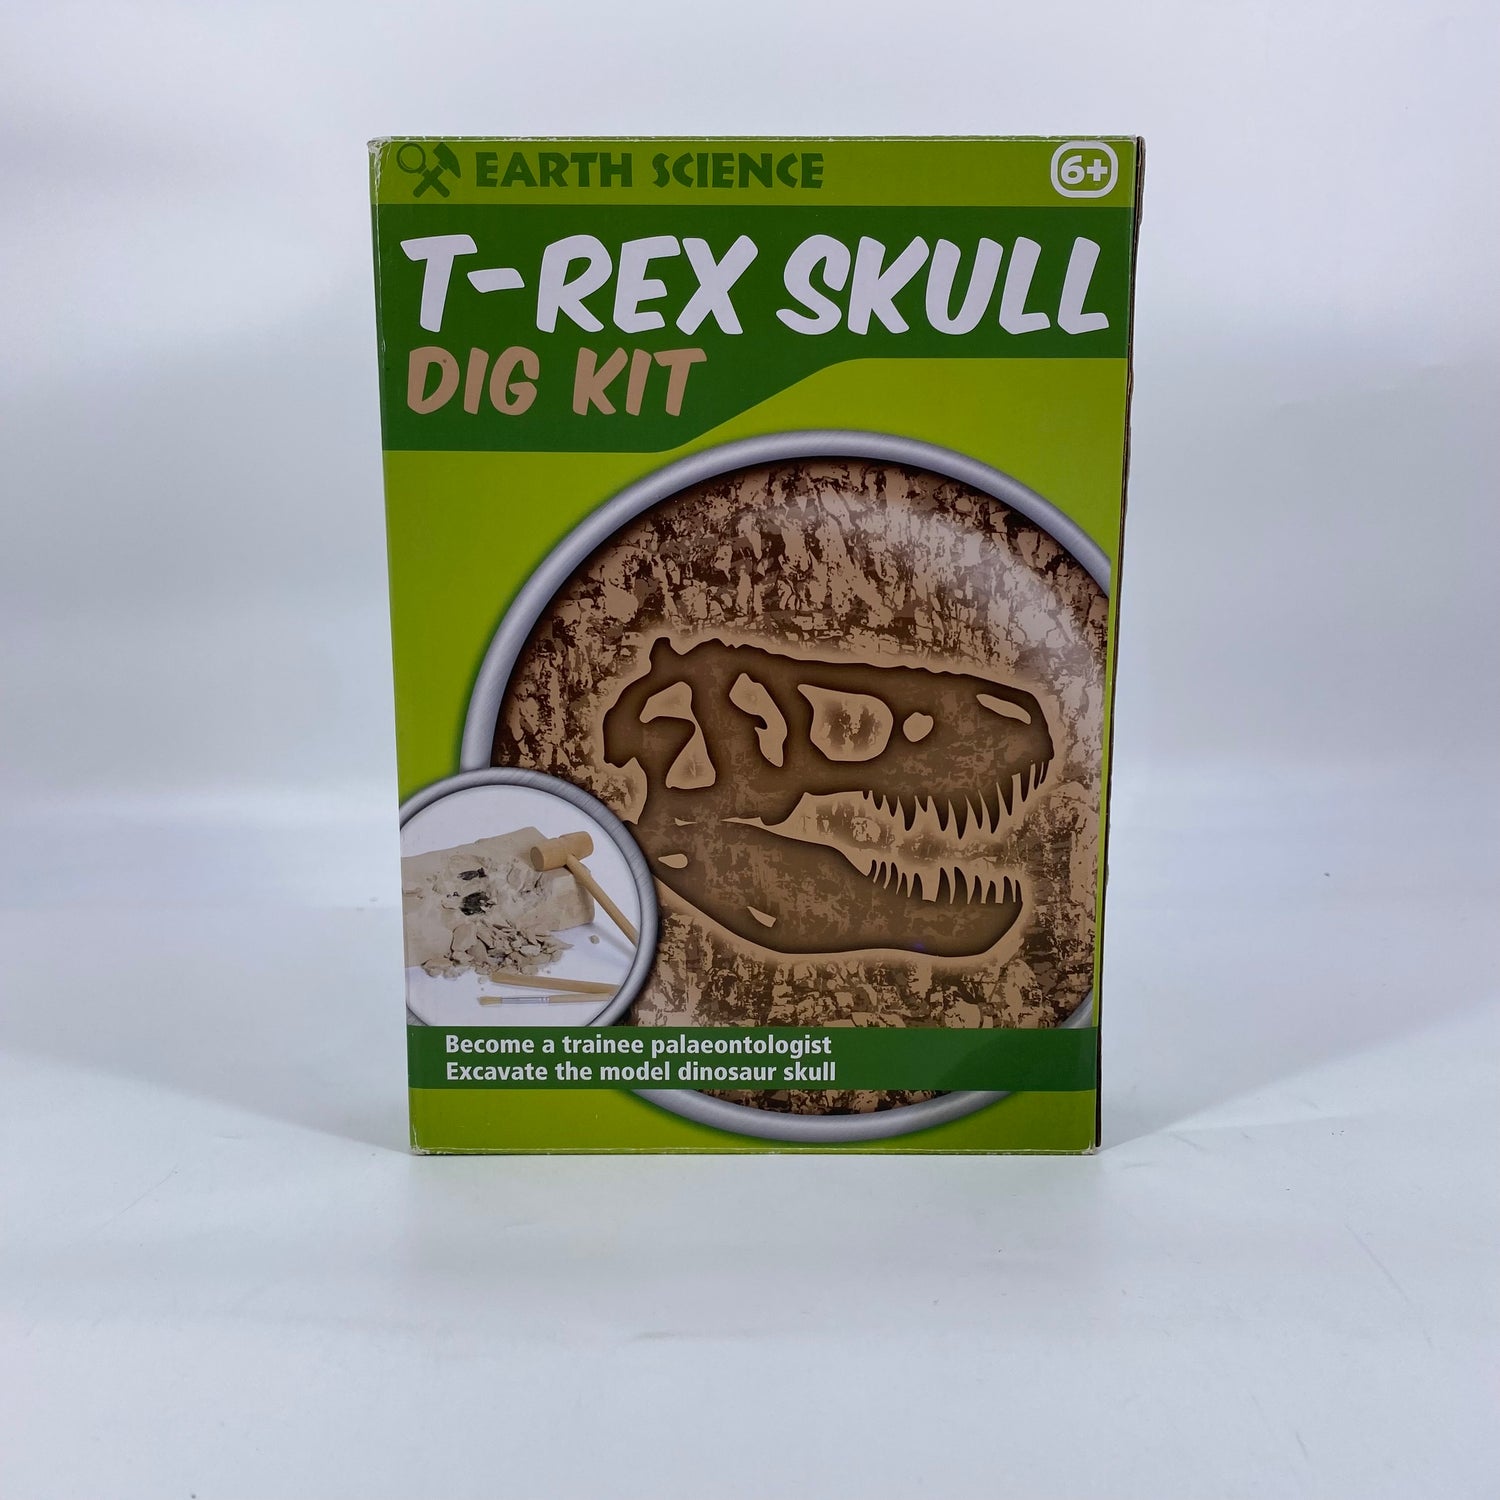 T-rex skull - Dig it